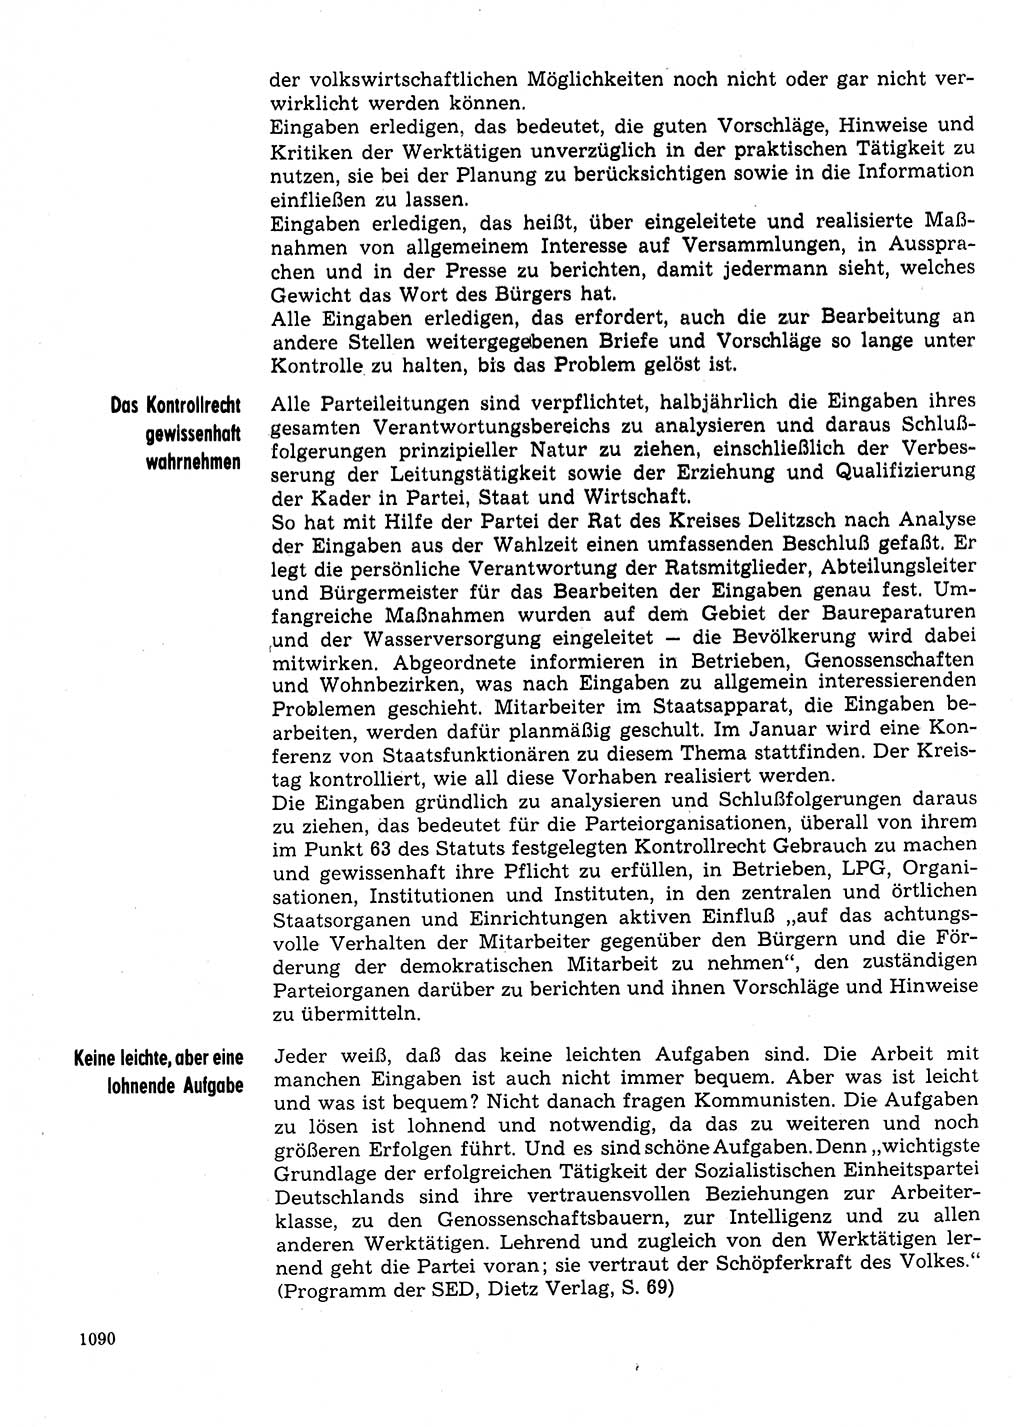 Neuer Weg (NW), Organ des Zentralkomitees (ZK) der SED (Sozialistische Einheitspartei Deutschlands) für Fragen des Parteilebens, 31. Jahrgang [Deutsche Demokratische Republik (DDR)] 1976, Seite 1090 (NW ZK SED DDR 1976, S. 1090)